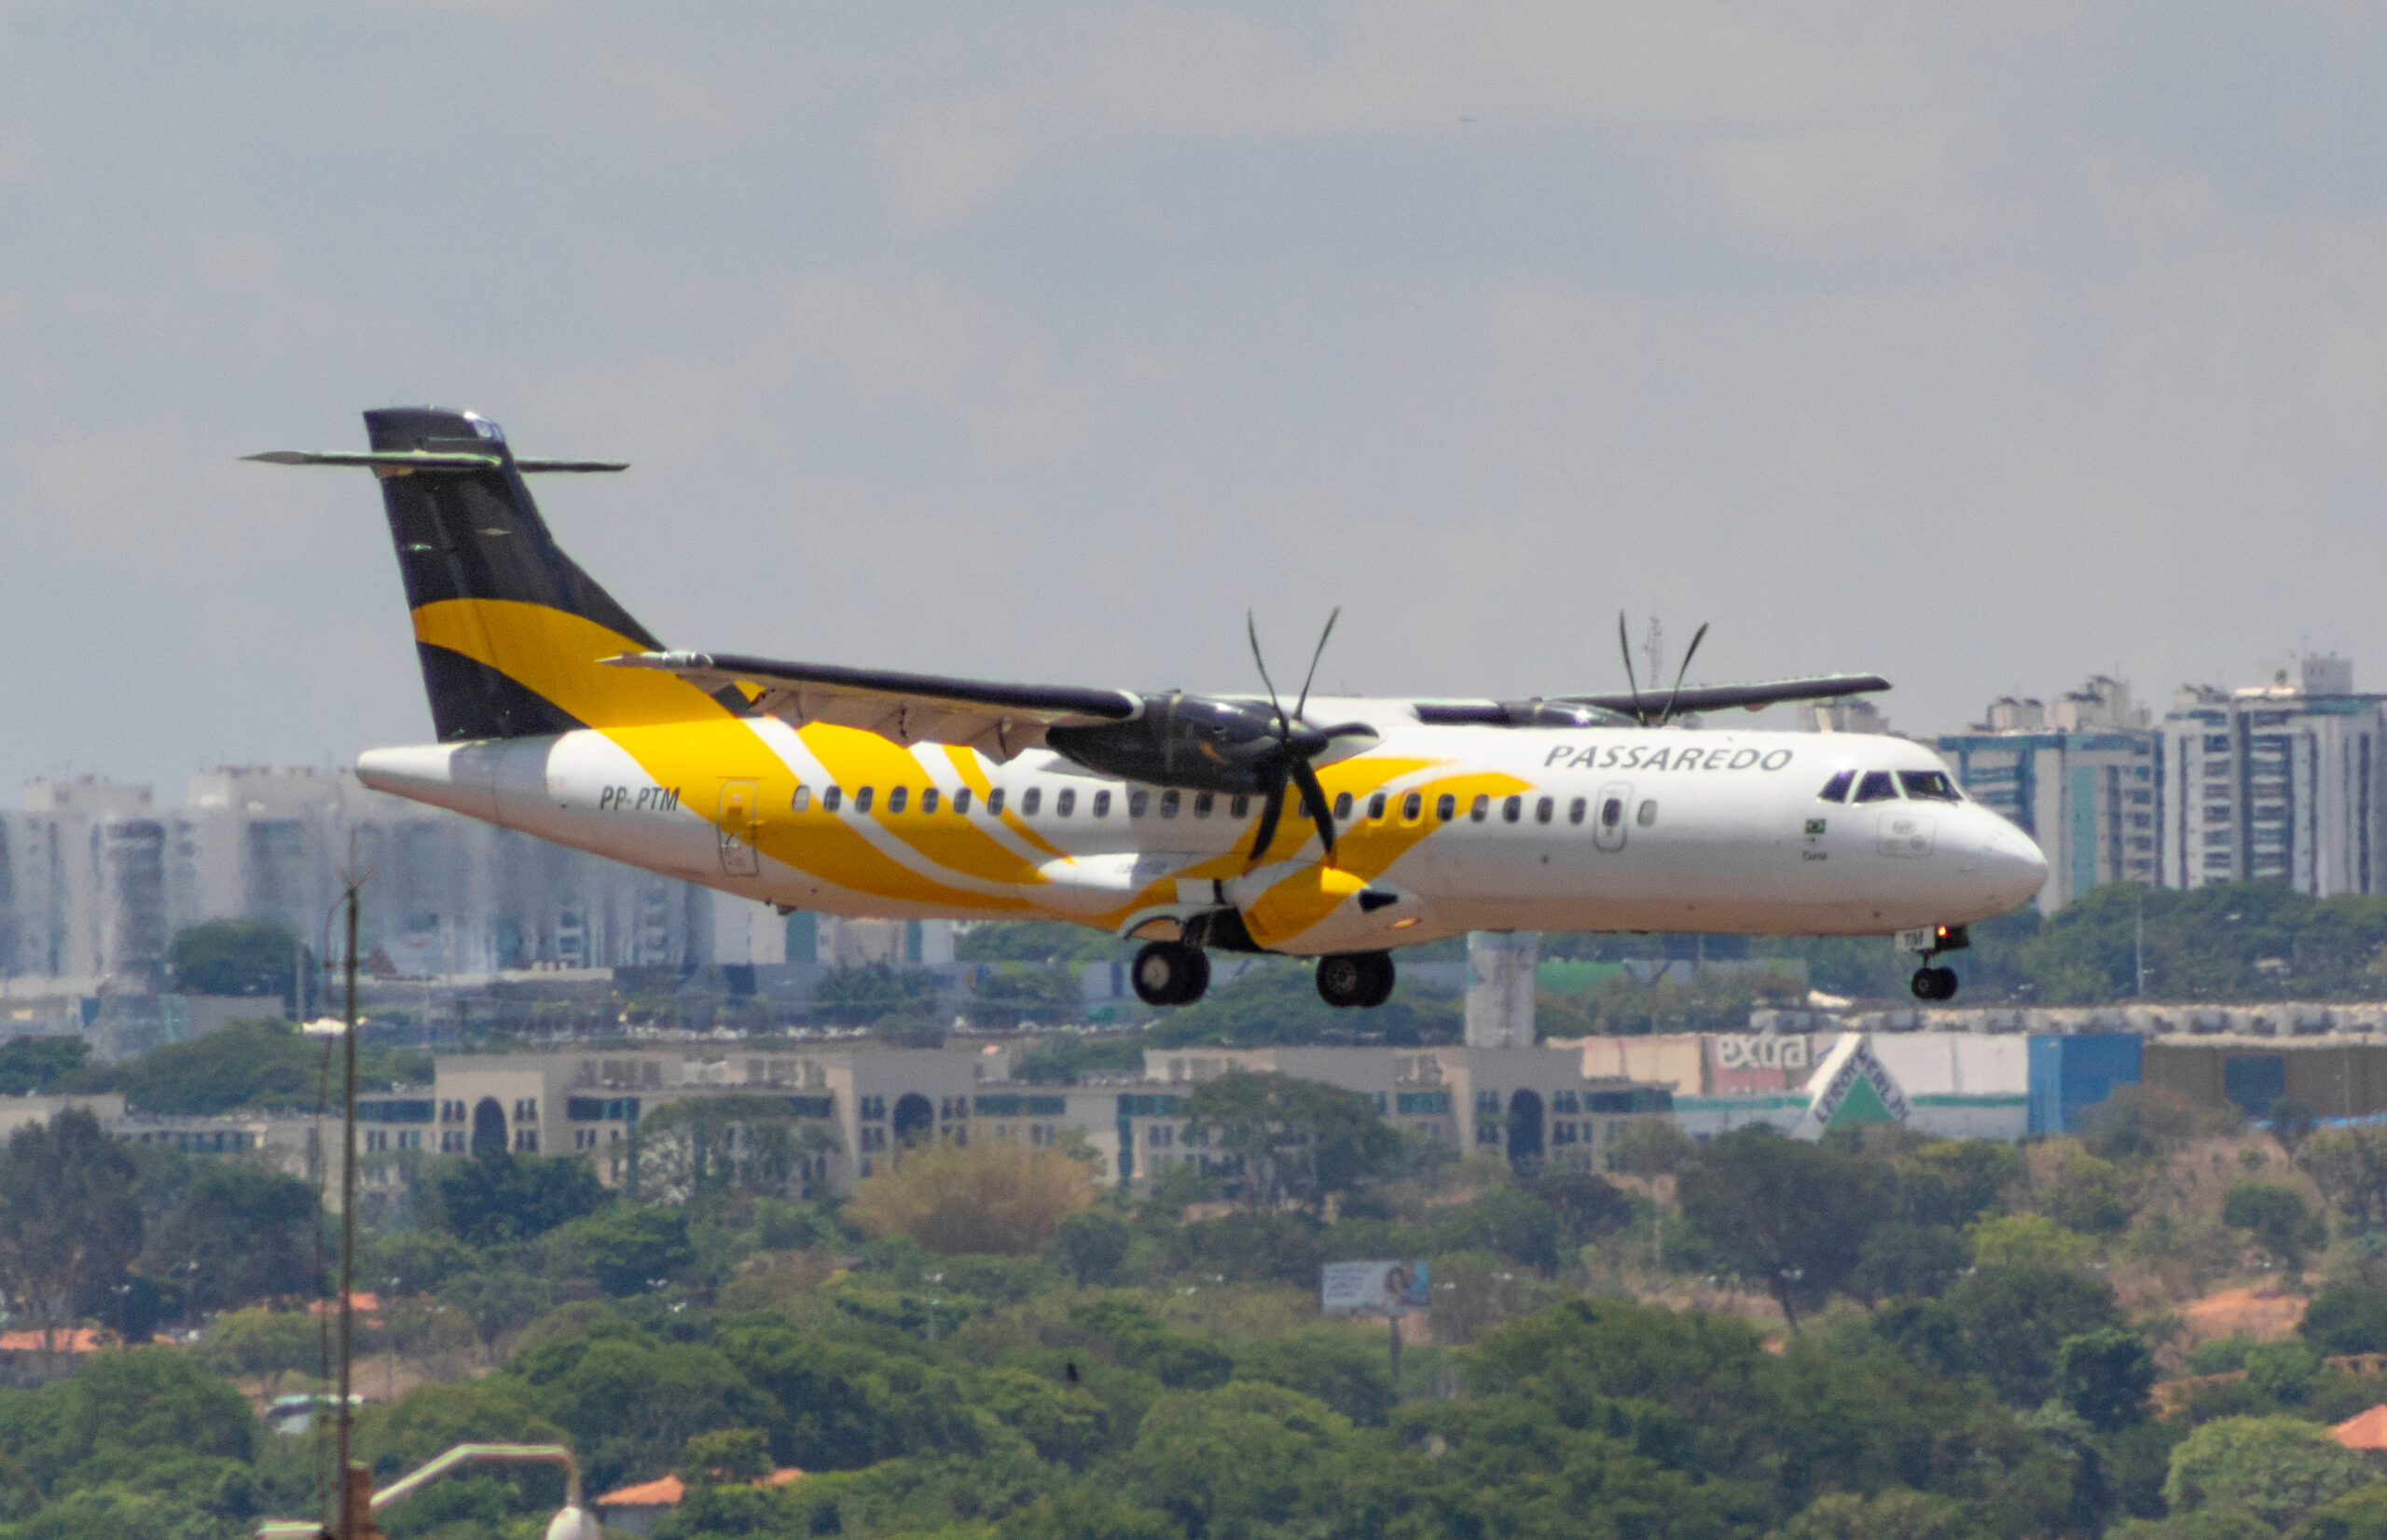 PP-PTM – ATR 72-500 – Voepass